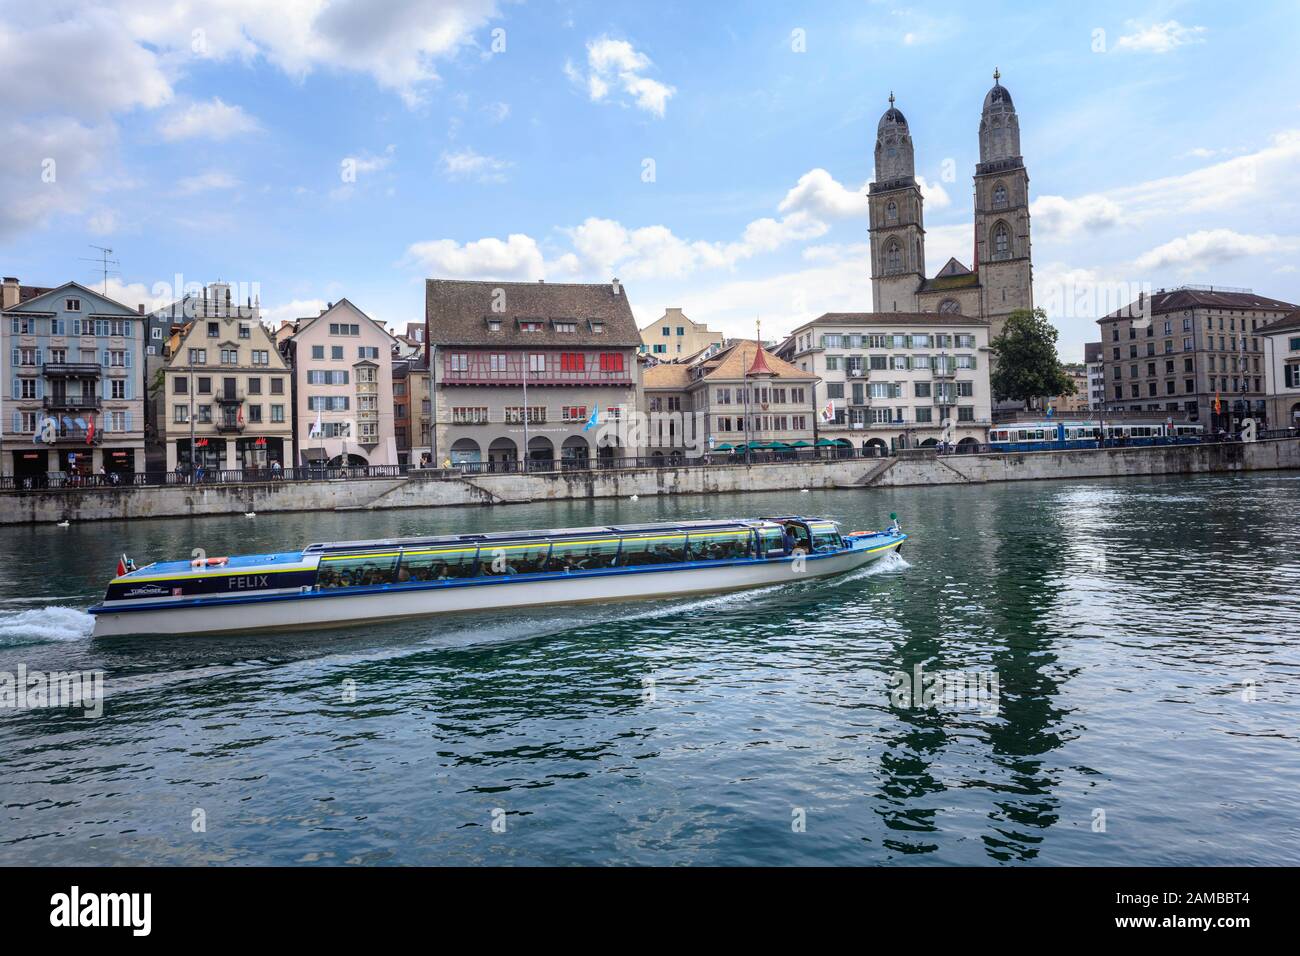 Un bateau longe la rivière Limmat à côté de la cathédrale Grossmunster. Zurich. Suisse Banque D'Images